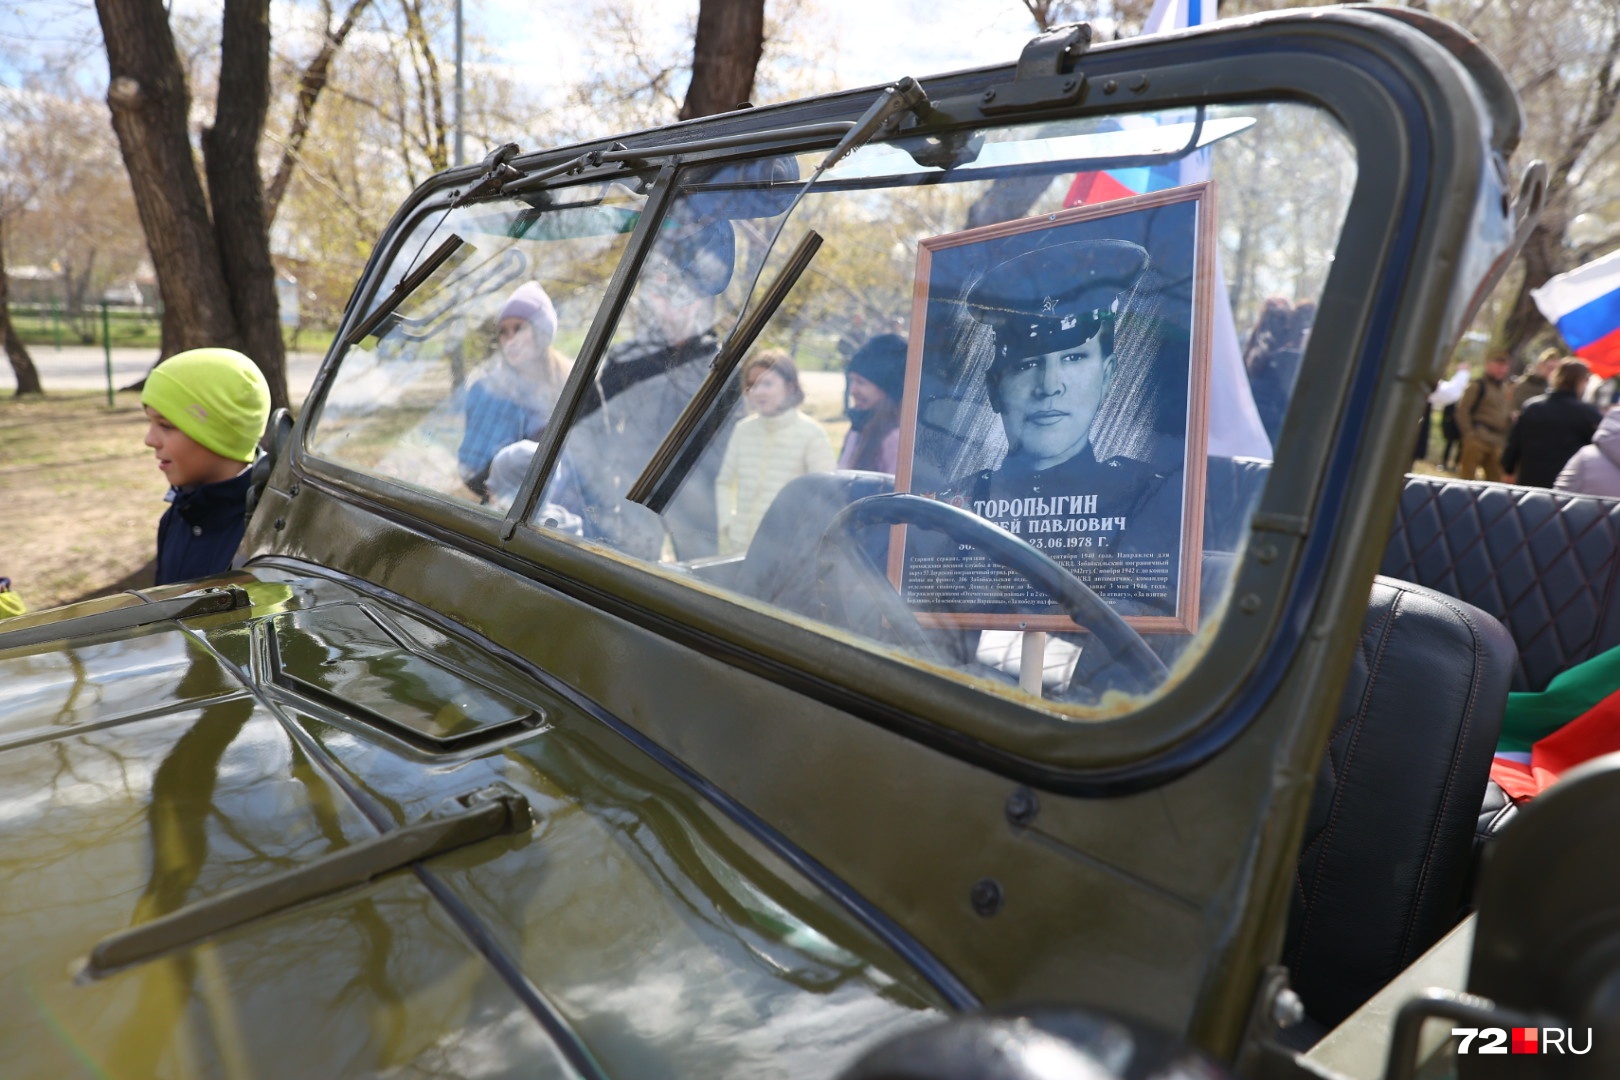 На лобовых стеклах некоторых авто были портреты героев Великой Отечественной войны